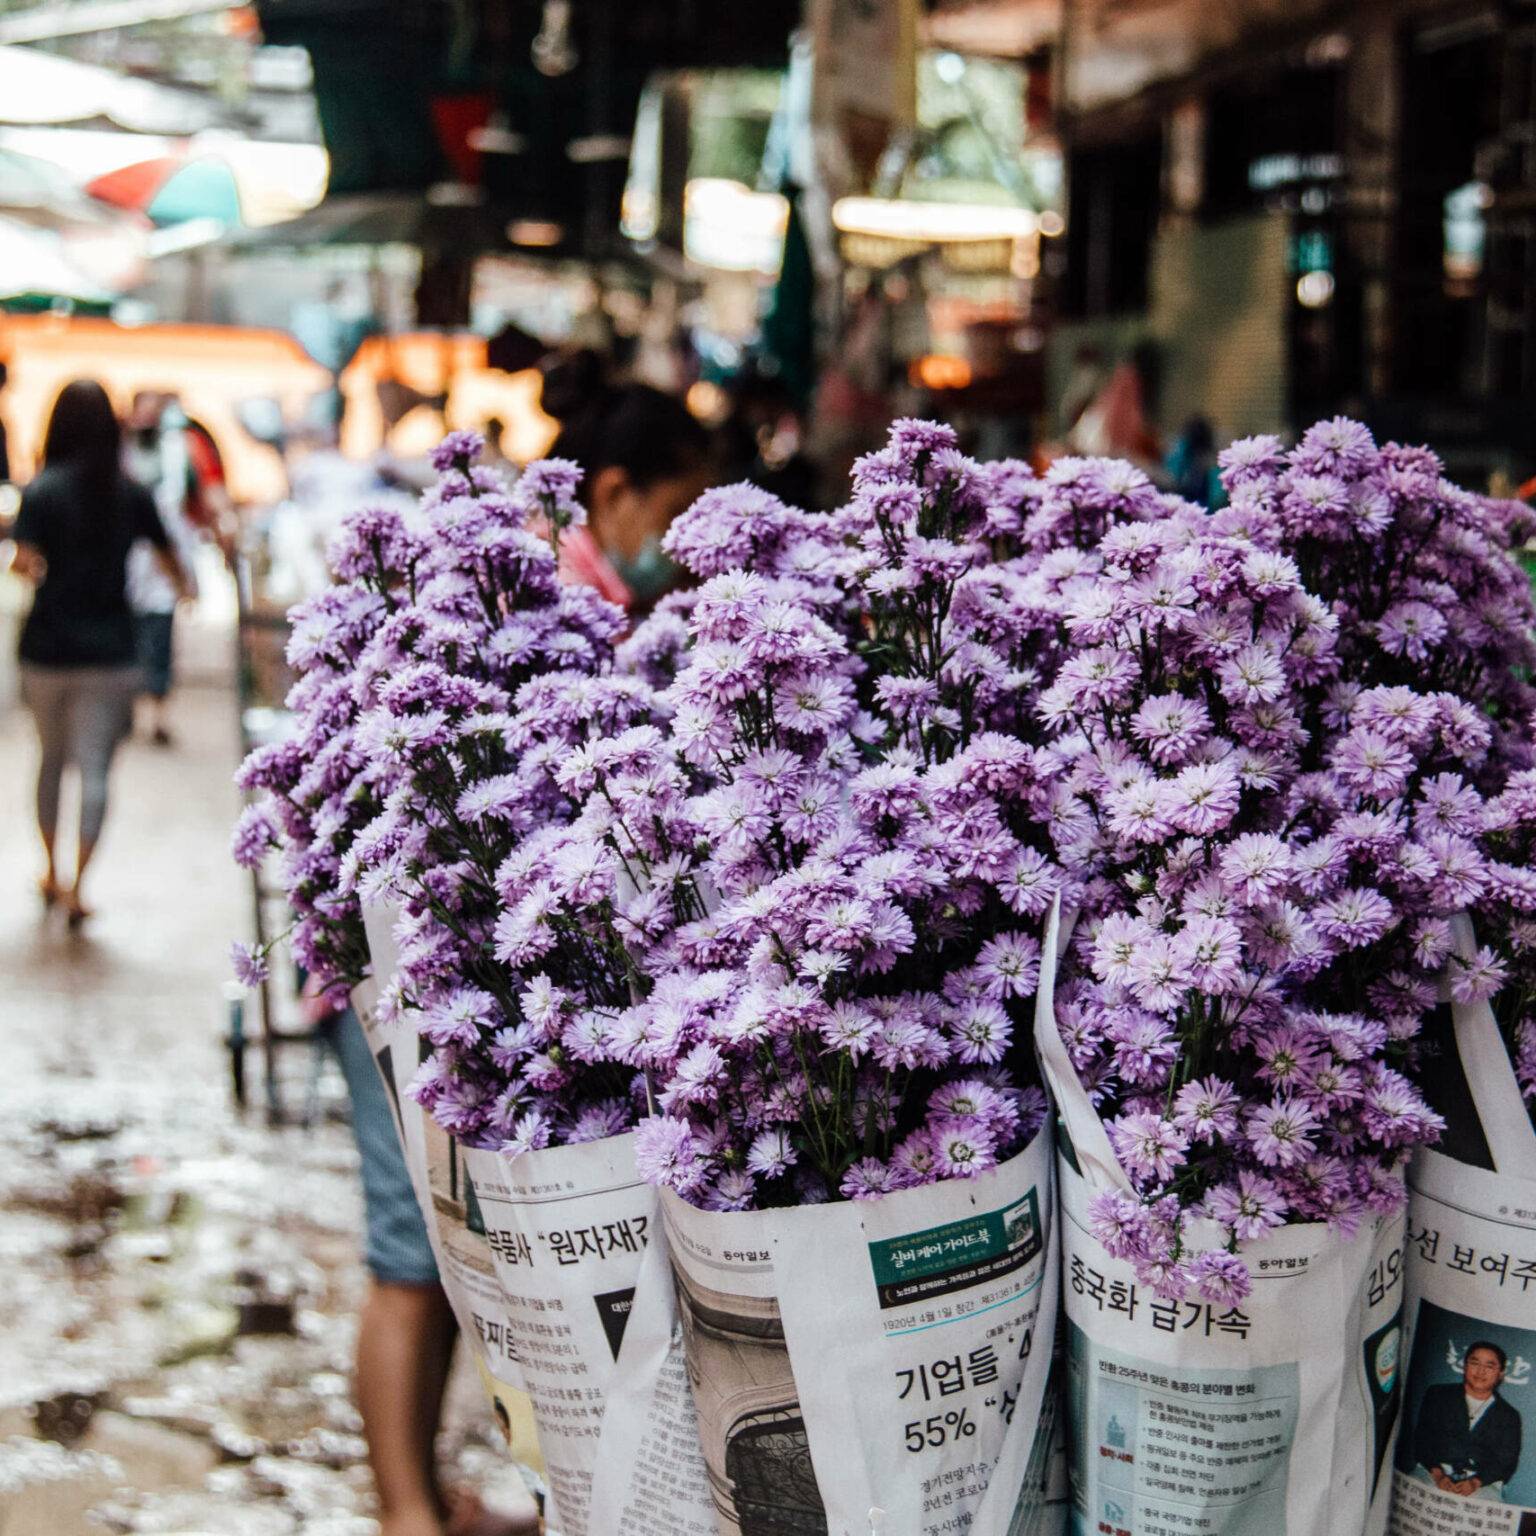 Lilafarbene Blumen in Zeitungspapier eingewickelt auf einem Markt in Bangkok.